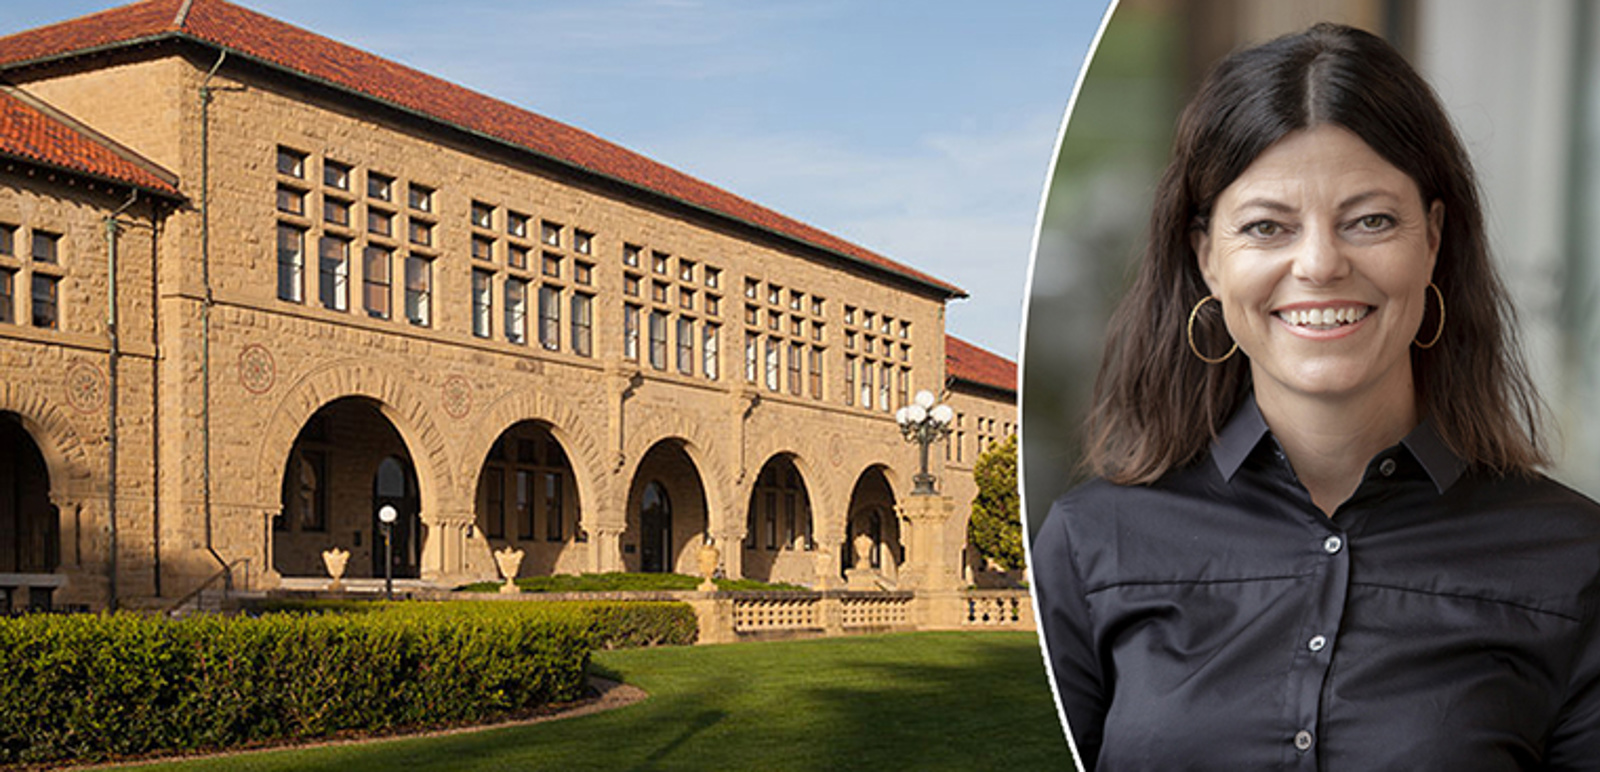 Montage Susanne Nejderås och bygganden Wallenberg Hall på Stanford University